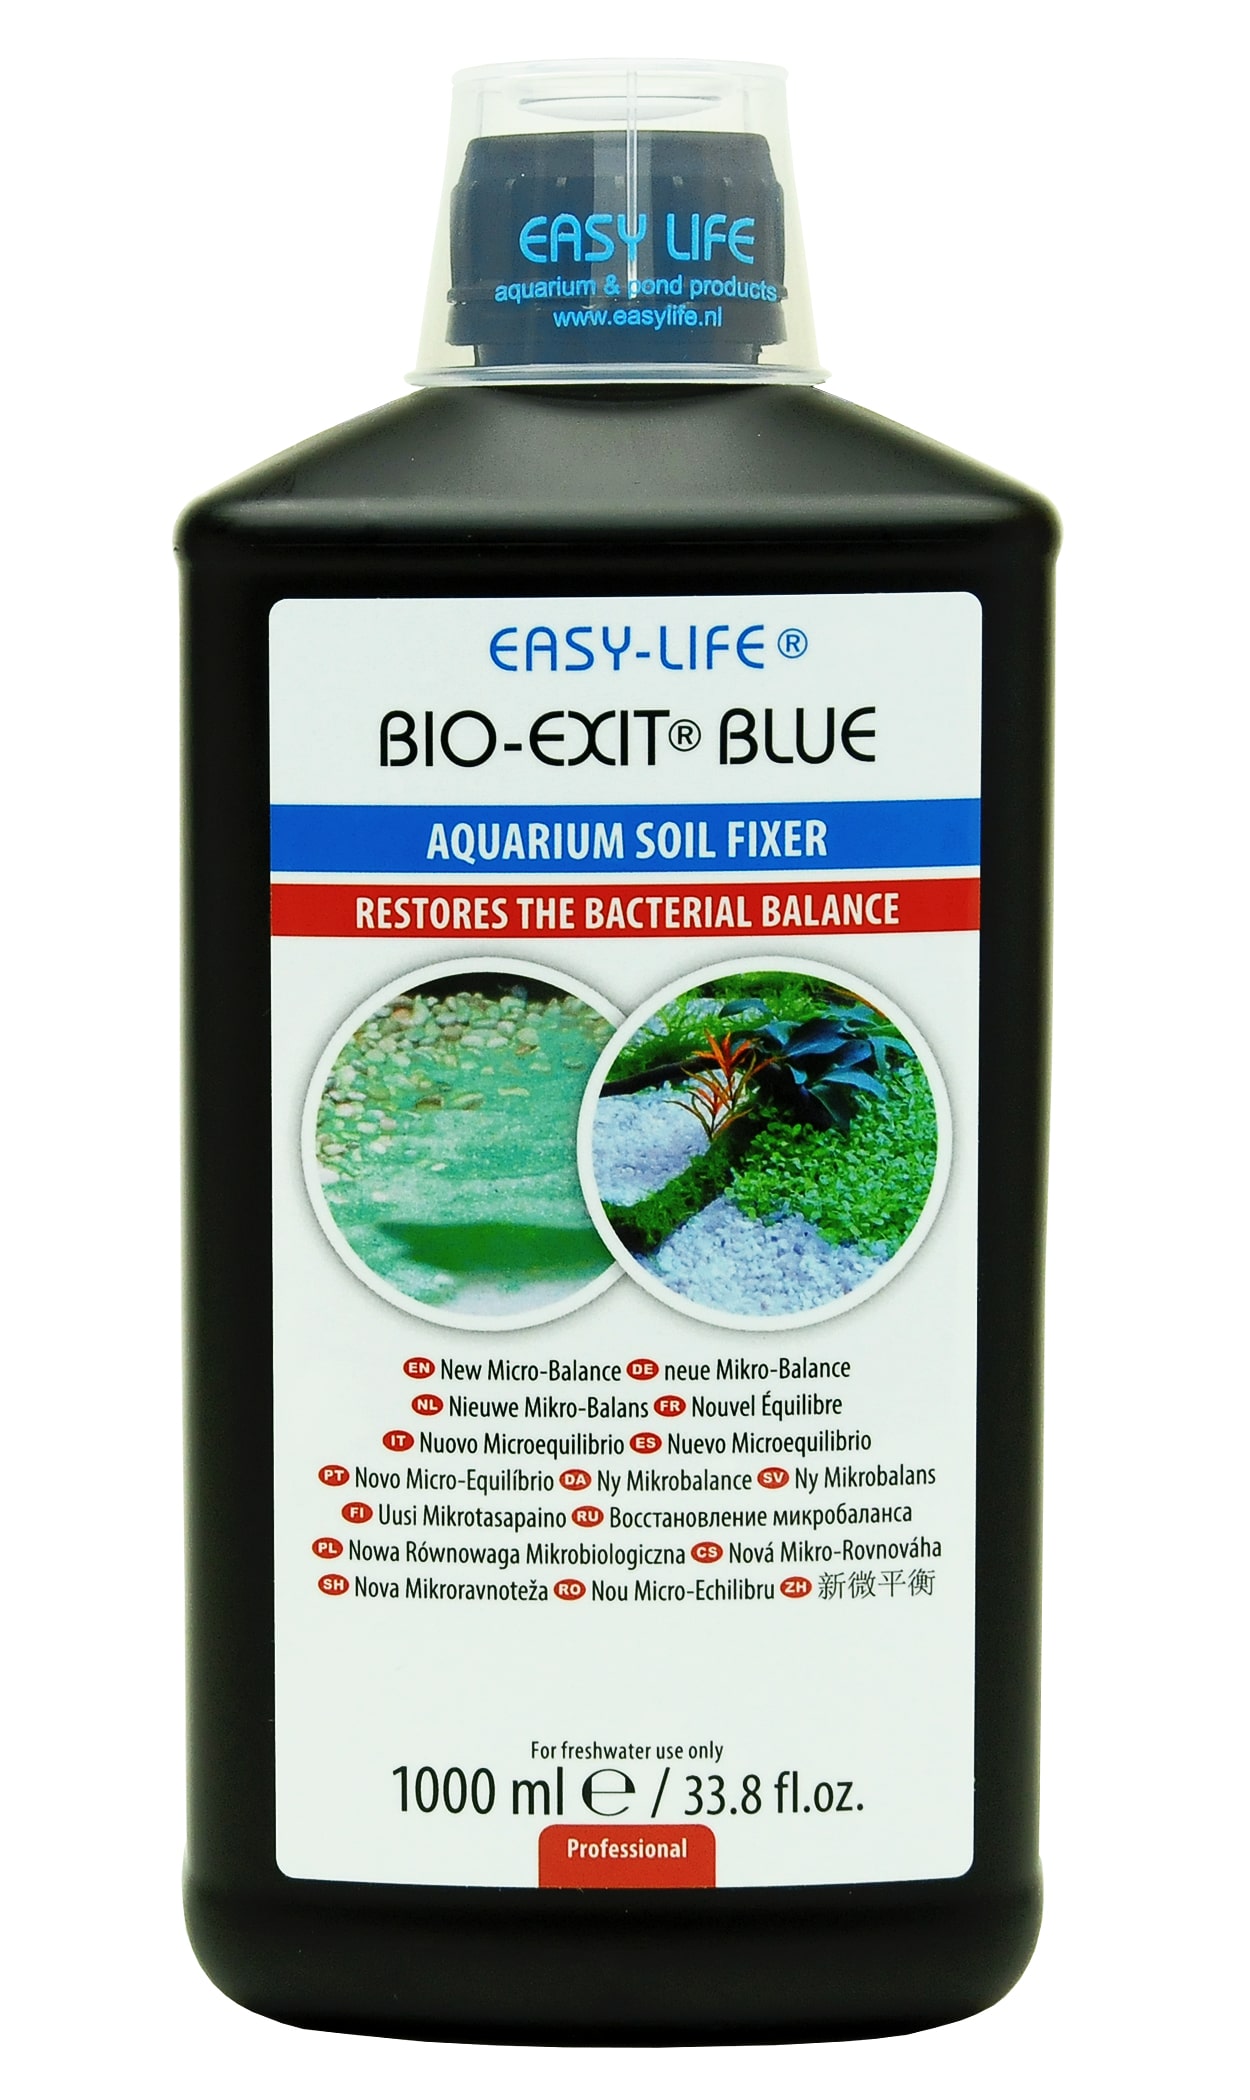 easy-life-bio-exit-blue-1000-ml-reequilibre-les-bacteries-du-sol-pour-reduire-la-croissance-des-algues-bleues-et-de-cyanobacteries